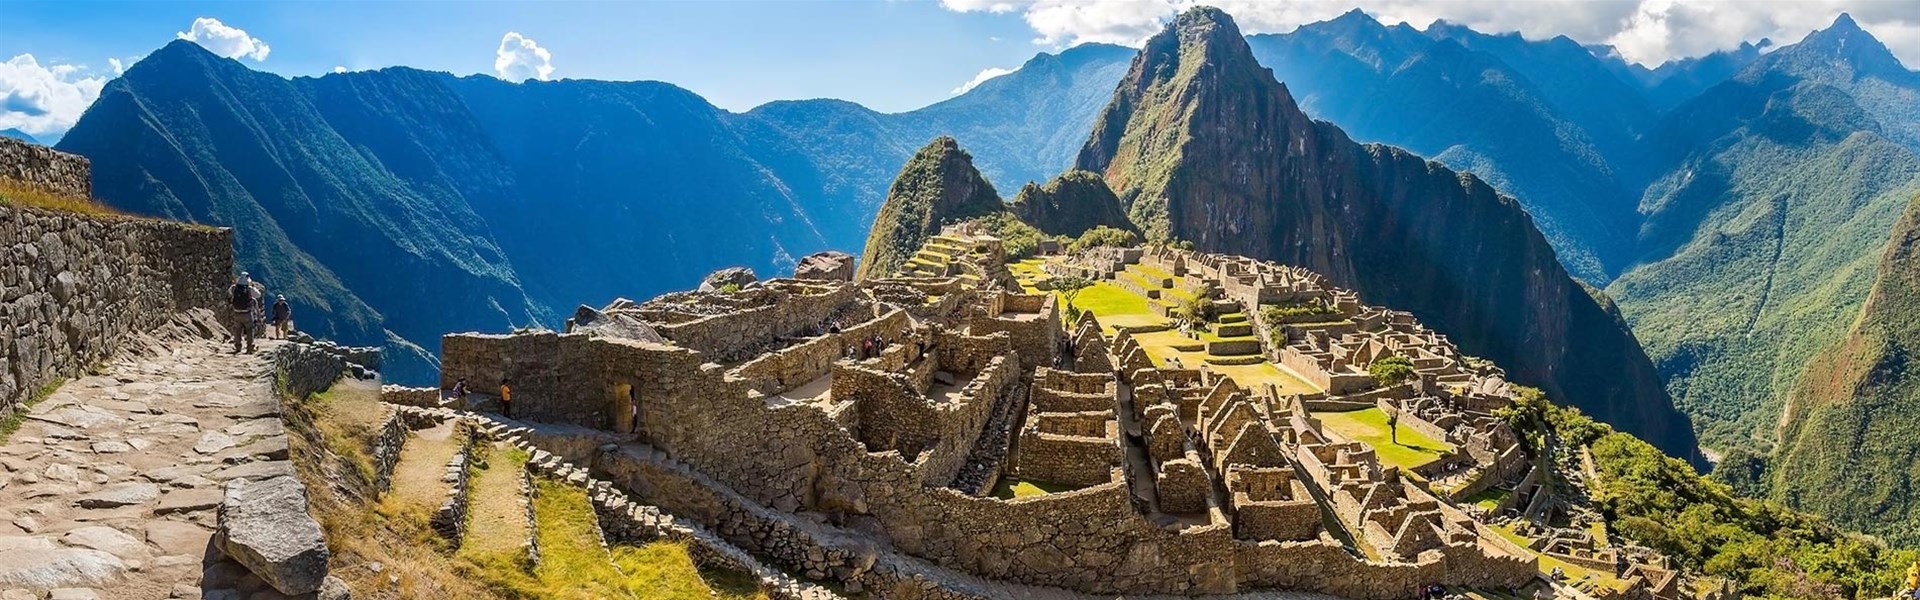 Peru: Inca Trail - 